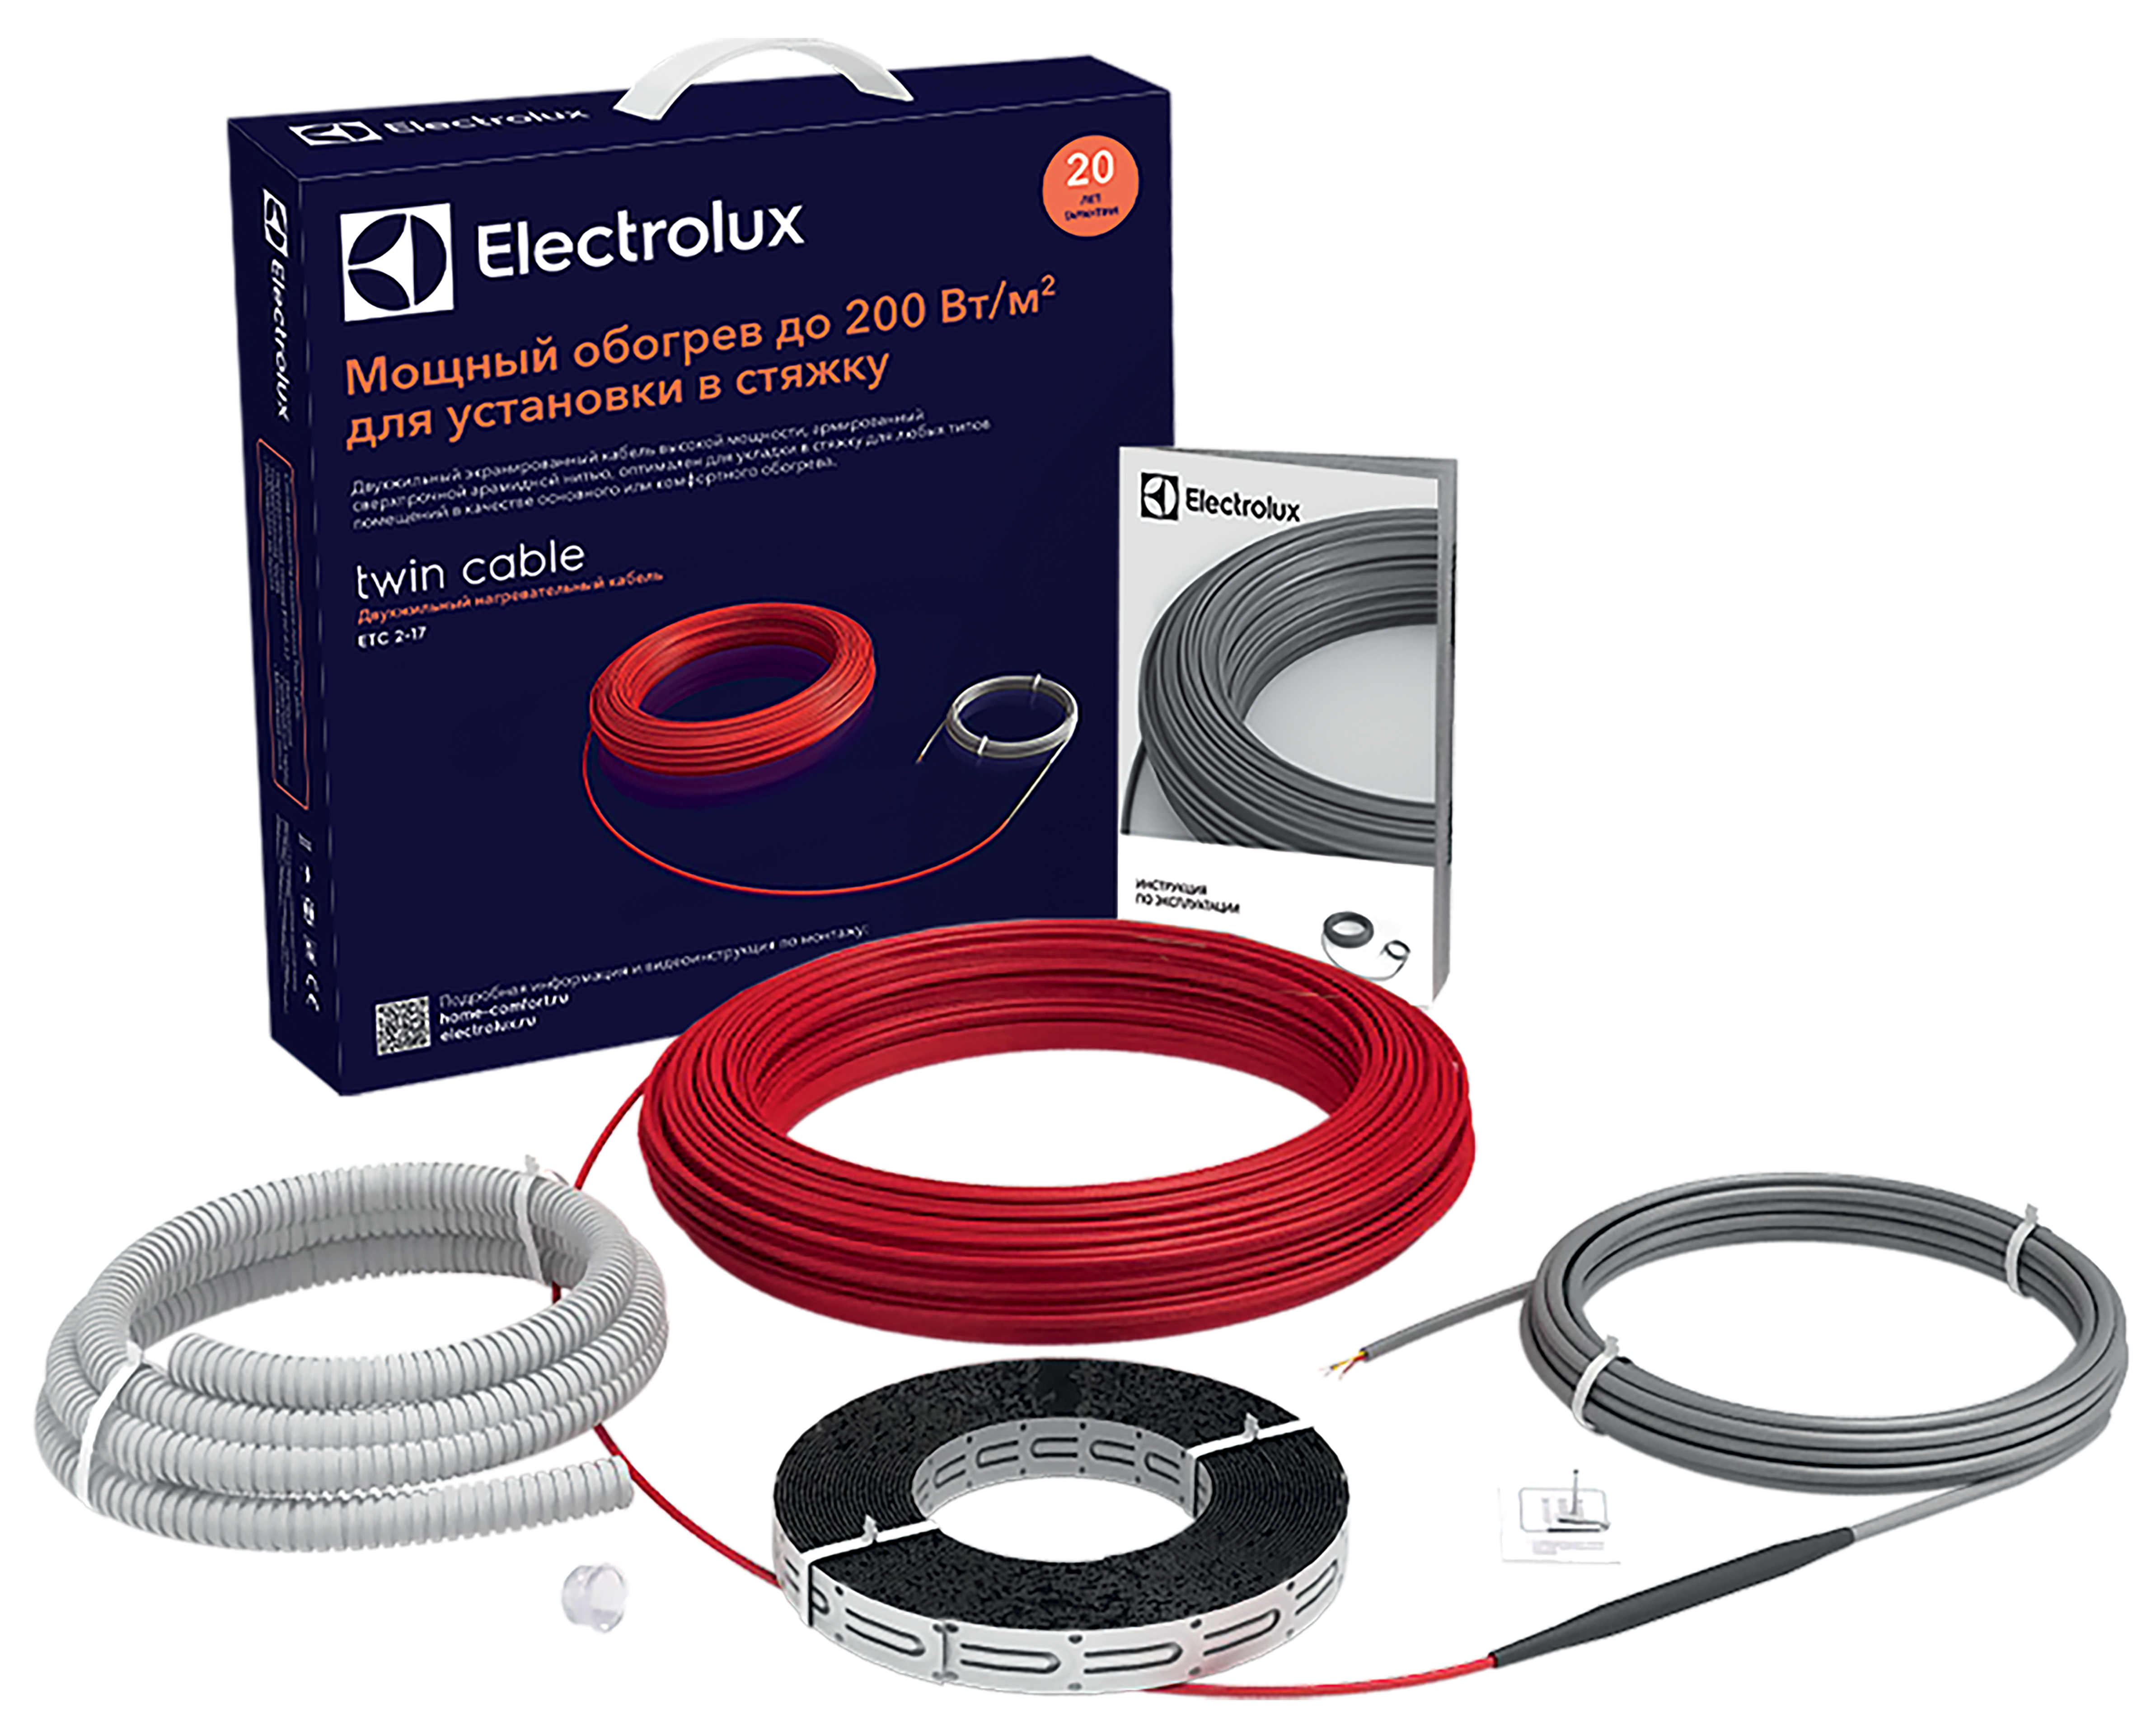 Теплый пол Electrolux под плитку Electrolux Twin Cable ETC 2-17-200